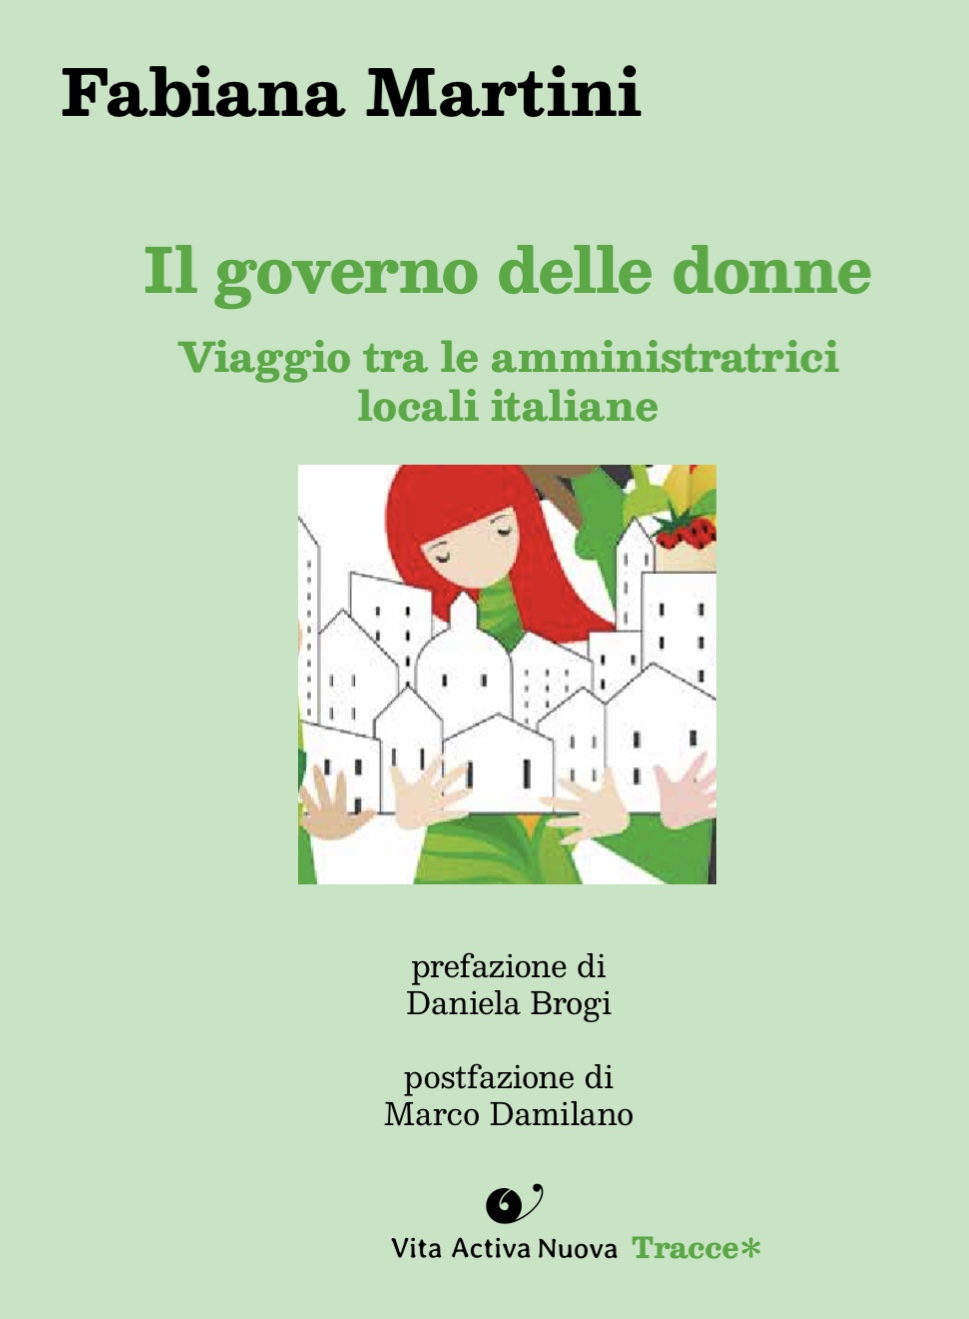 Al momento stai visualizzando Presentazione del libro “Il governo delle donne”, della giornalista Fabiana Martini, martedì 25 ottobre, al Circolo della Stampa di Trieste